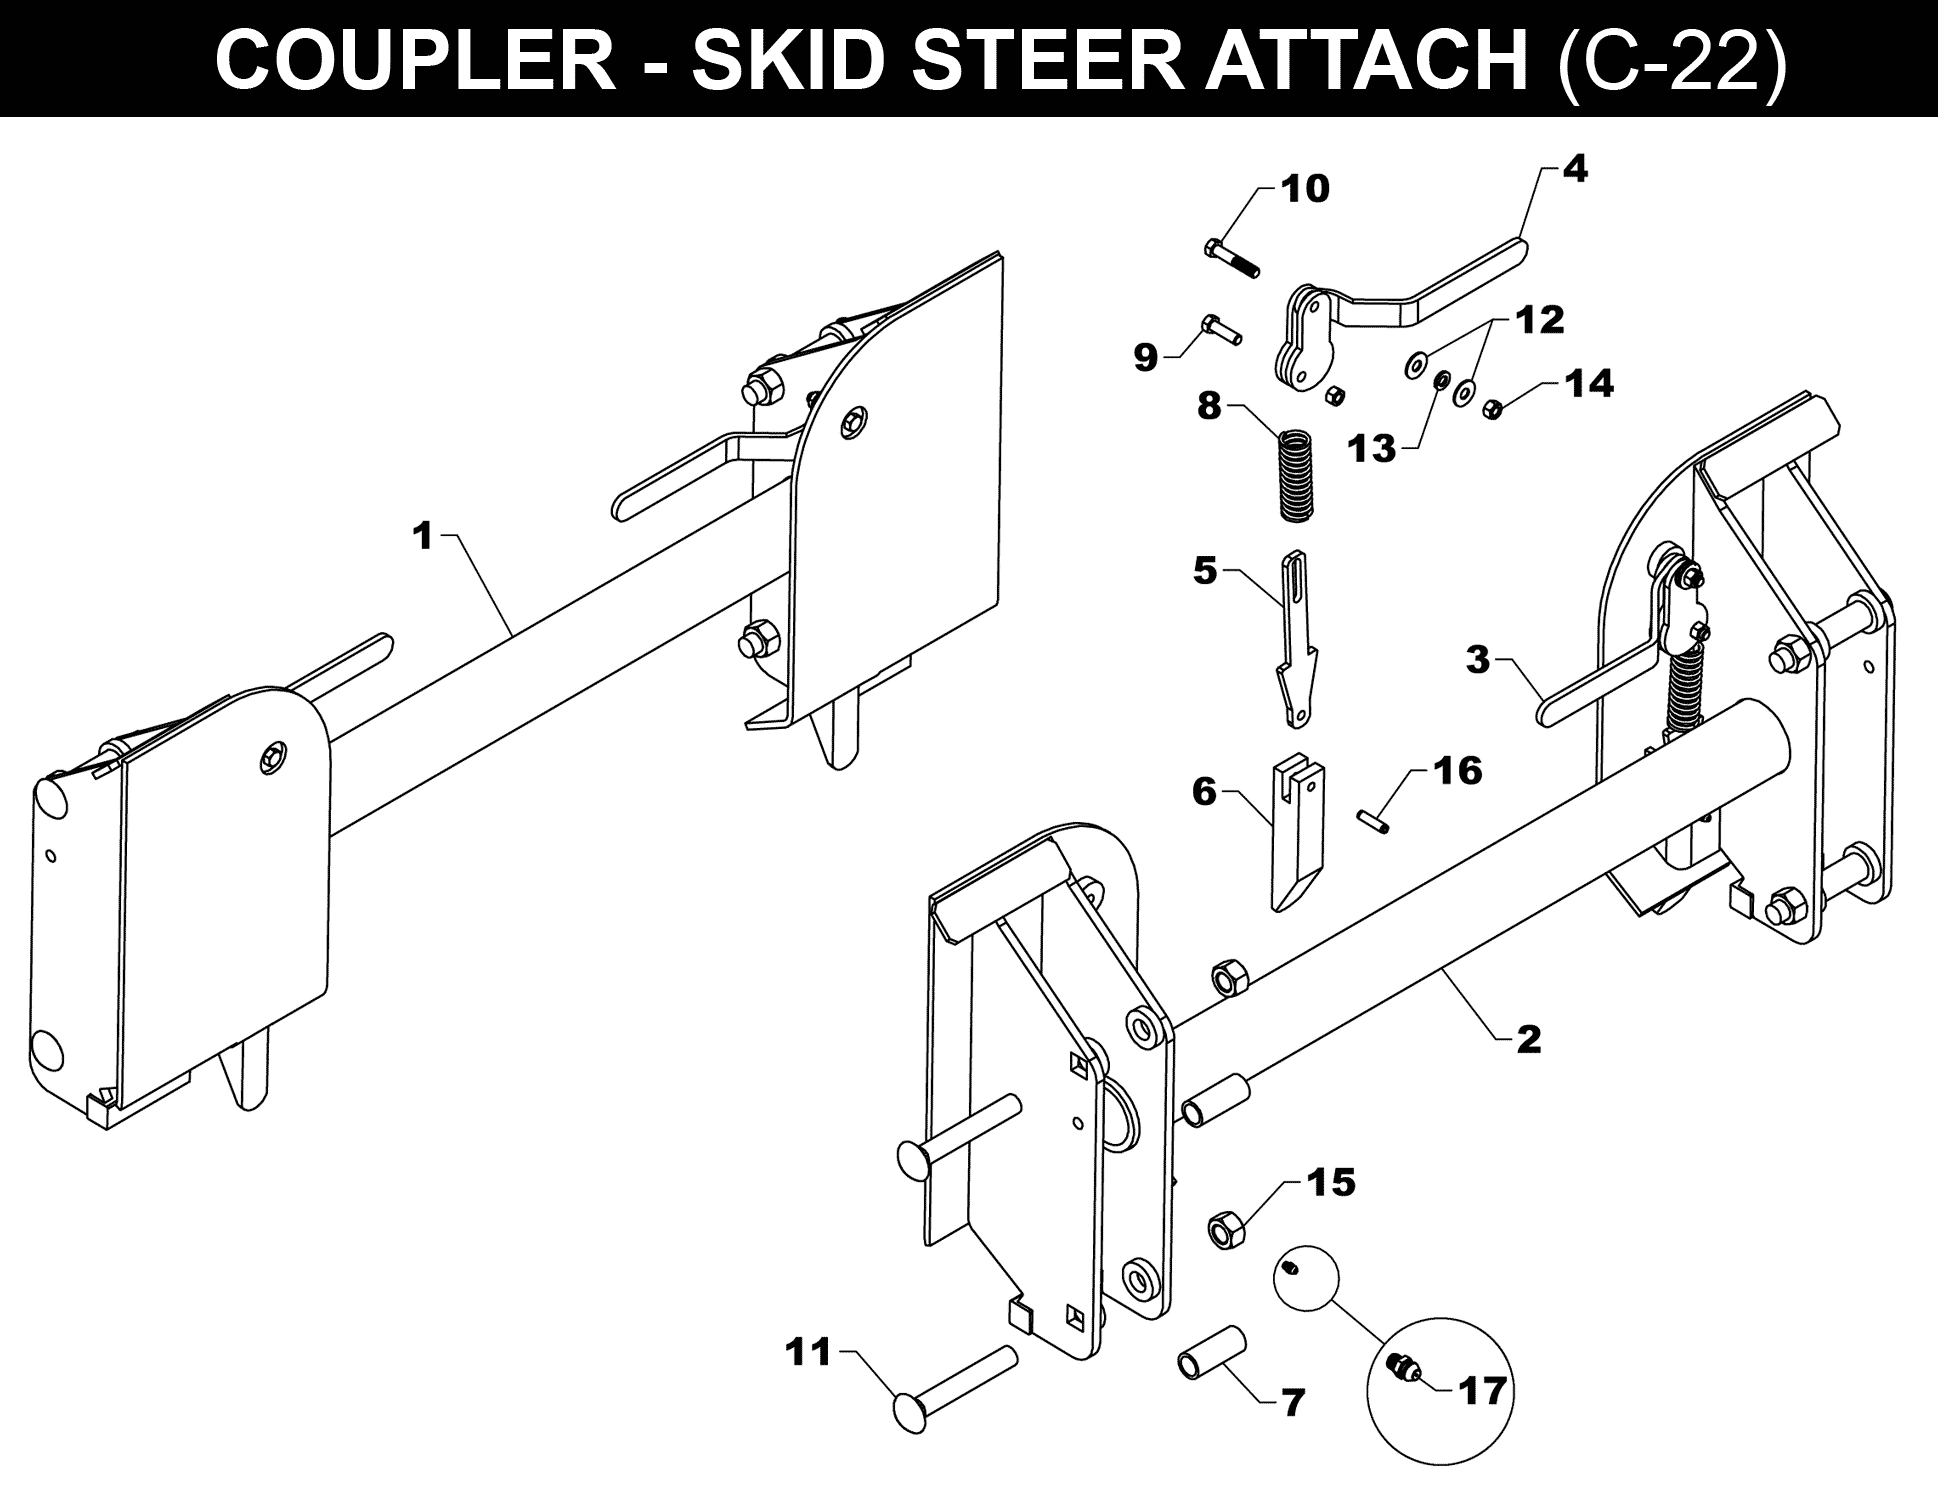 SKID STEER COUPLER - C-22